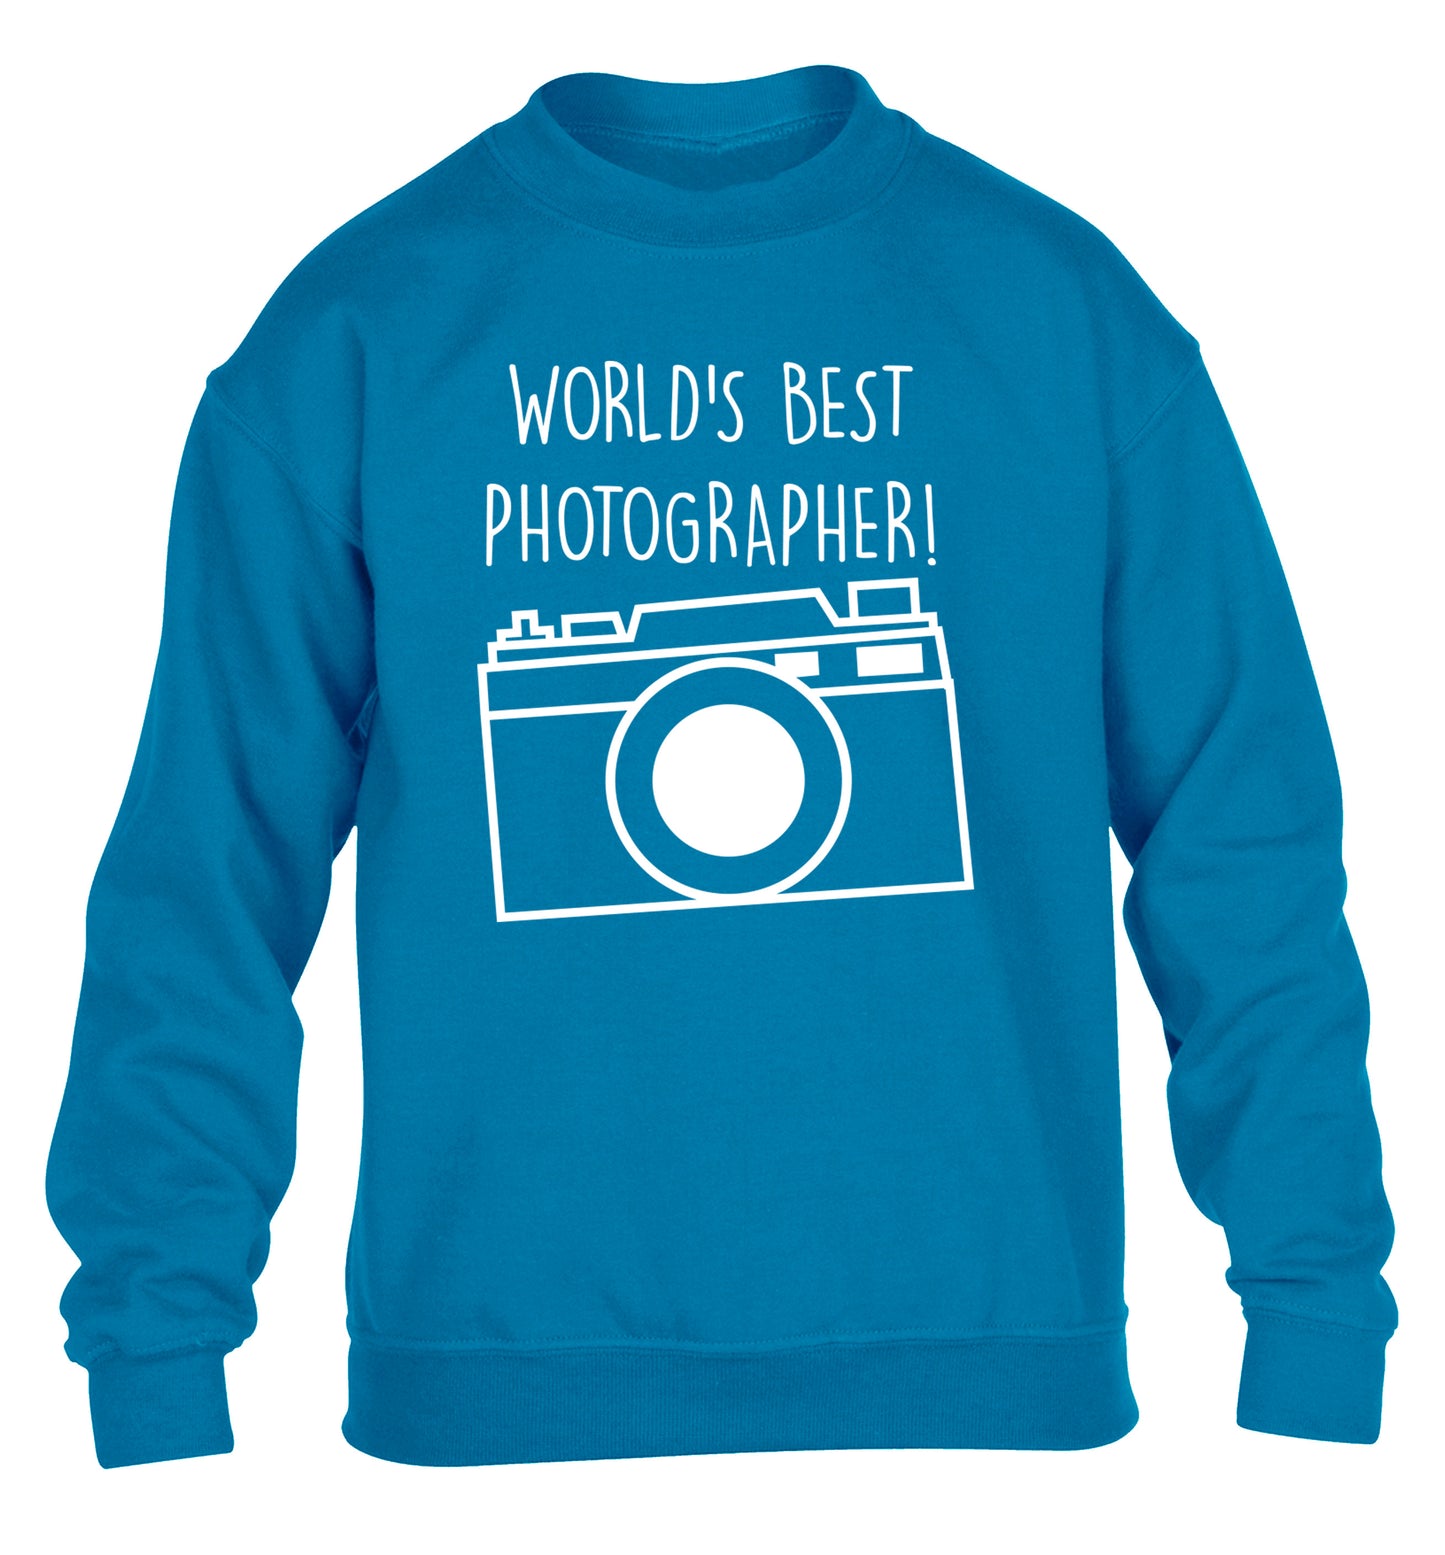 Worlds best photographer  children's blue sweater 12-13 Years